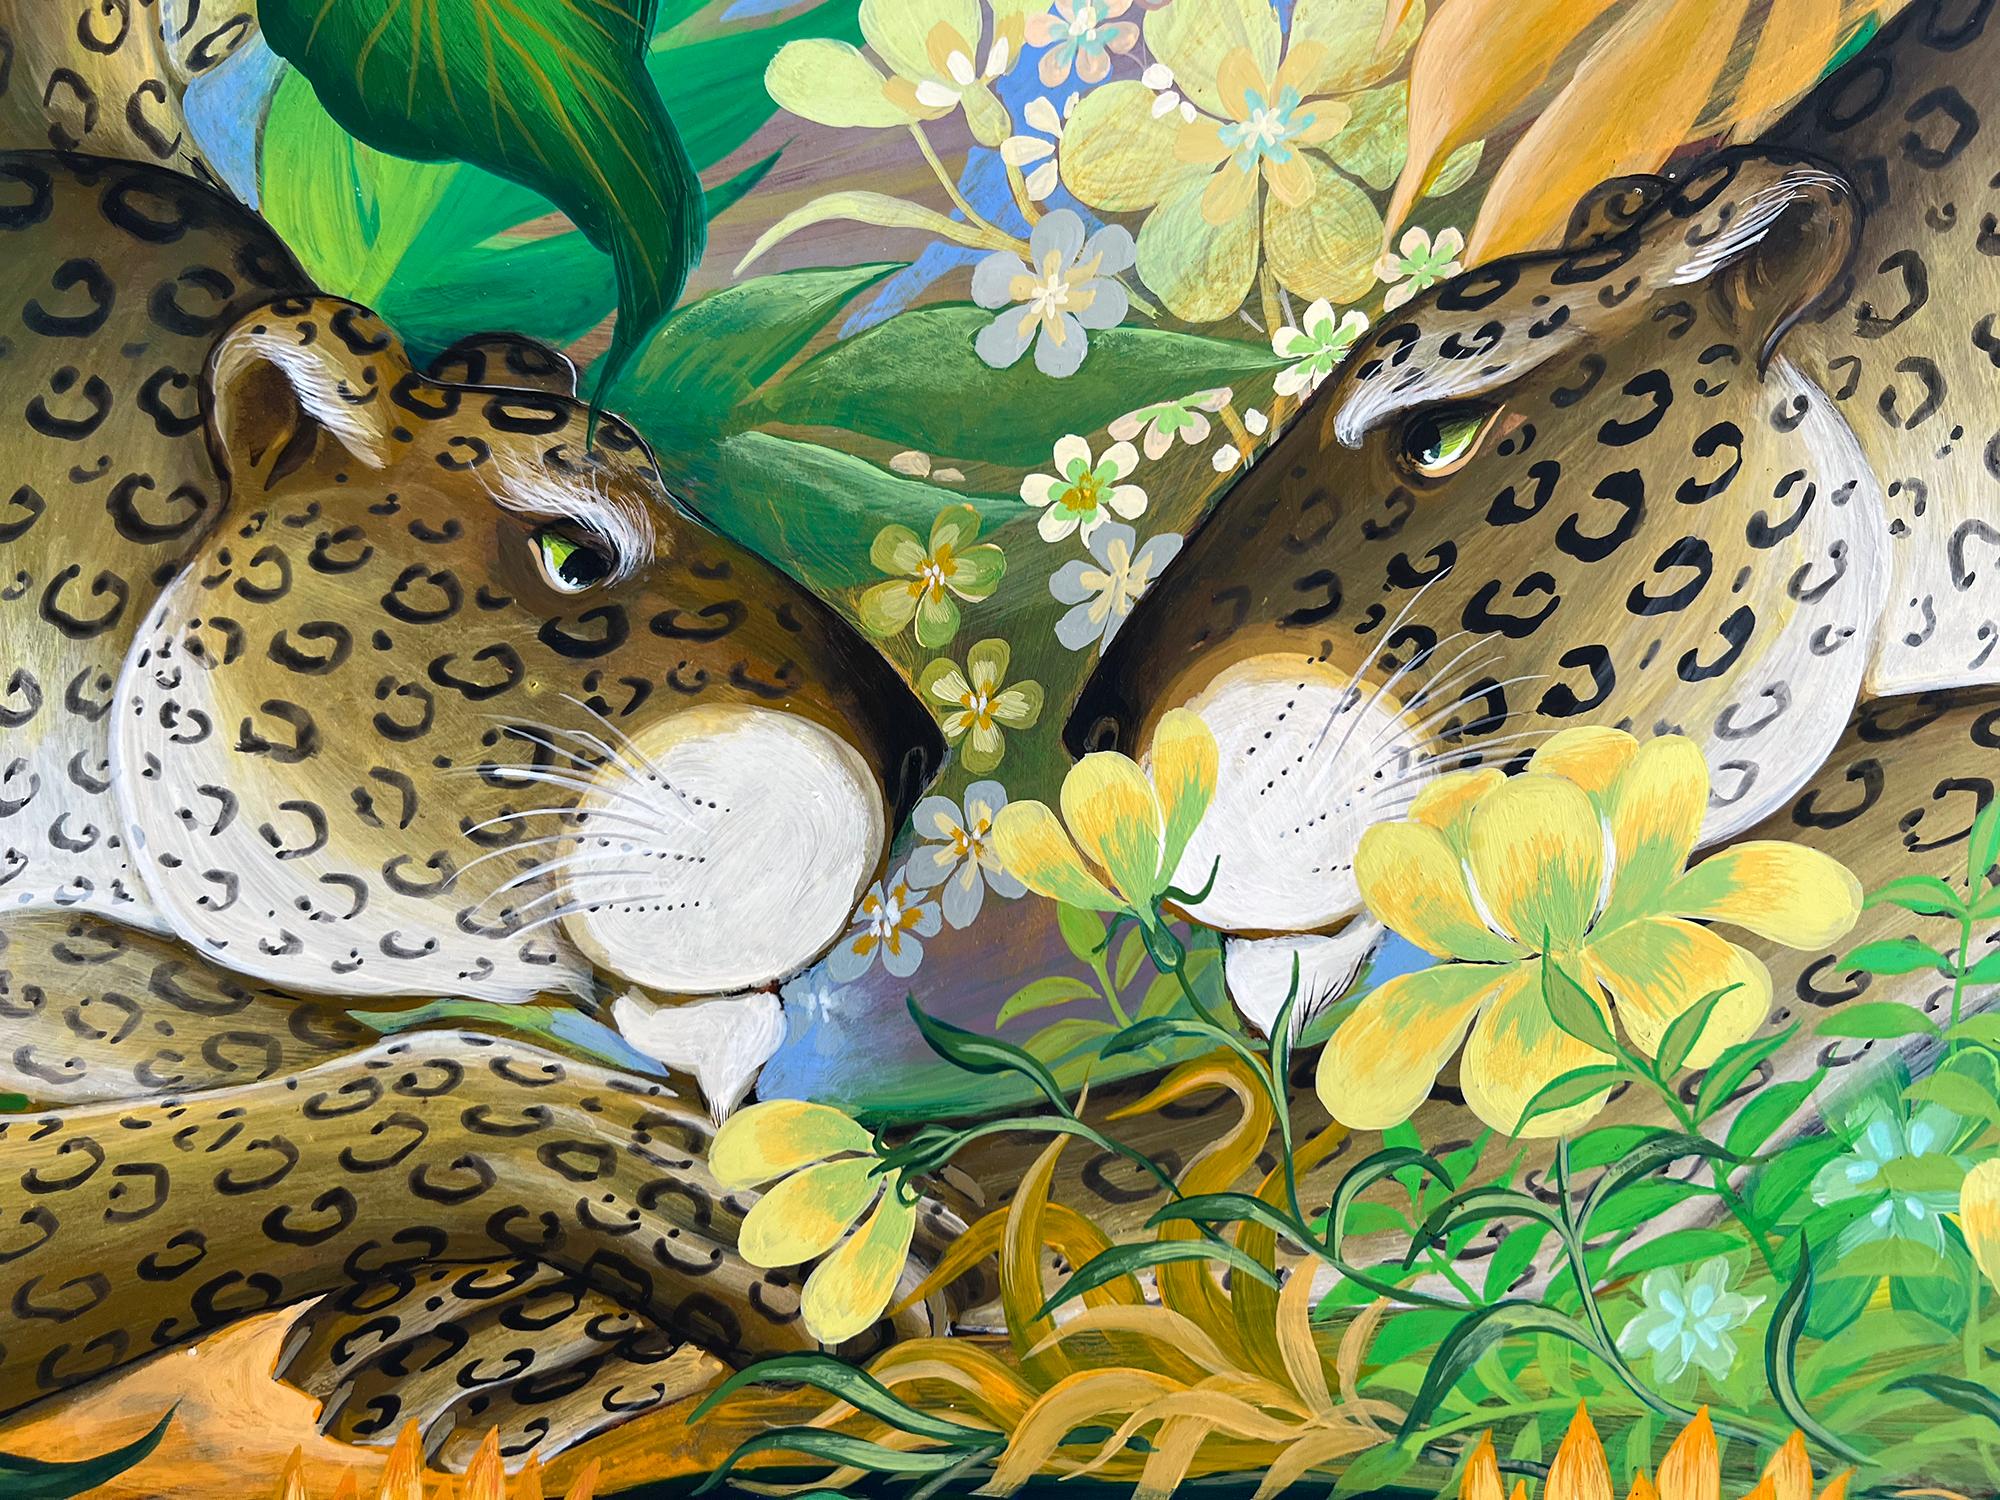 Deux léopards dans un bassin de réflexion  dans un jardin tropical fantastique - Art naïf - Painting de Gustavo Novoa